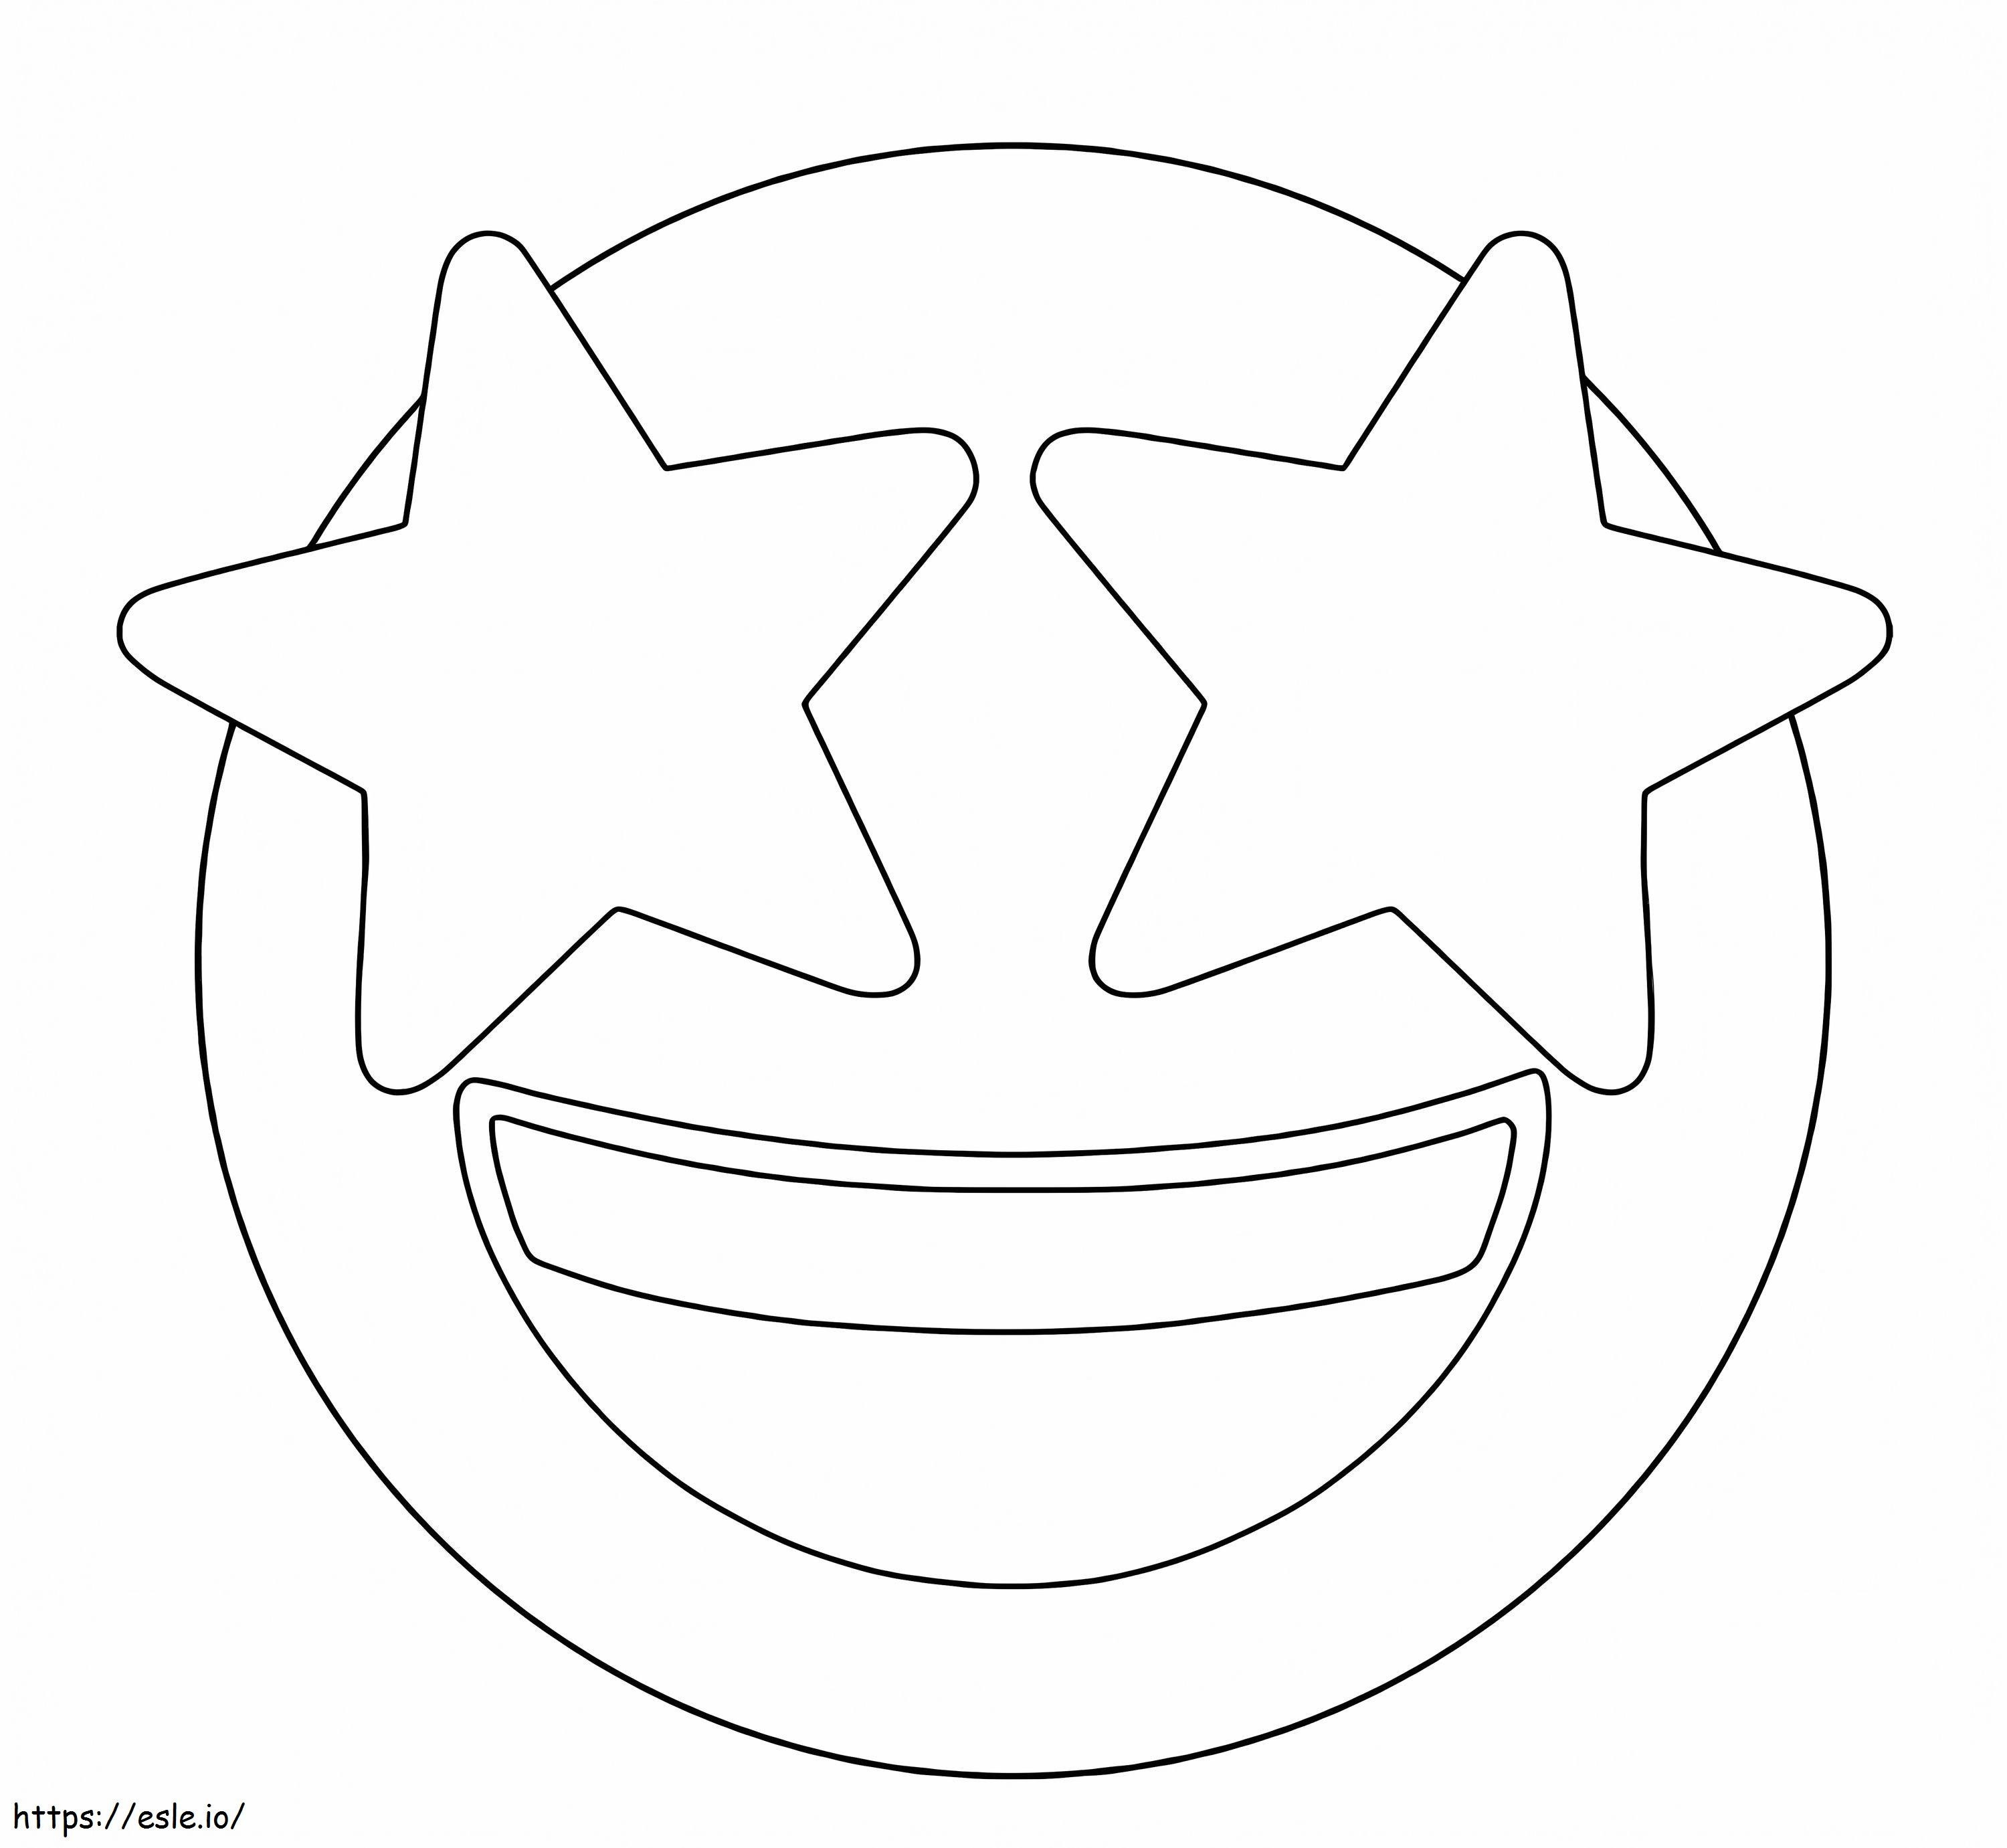 Sternaugen-Emoji ausmalbilder